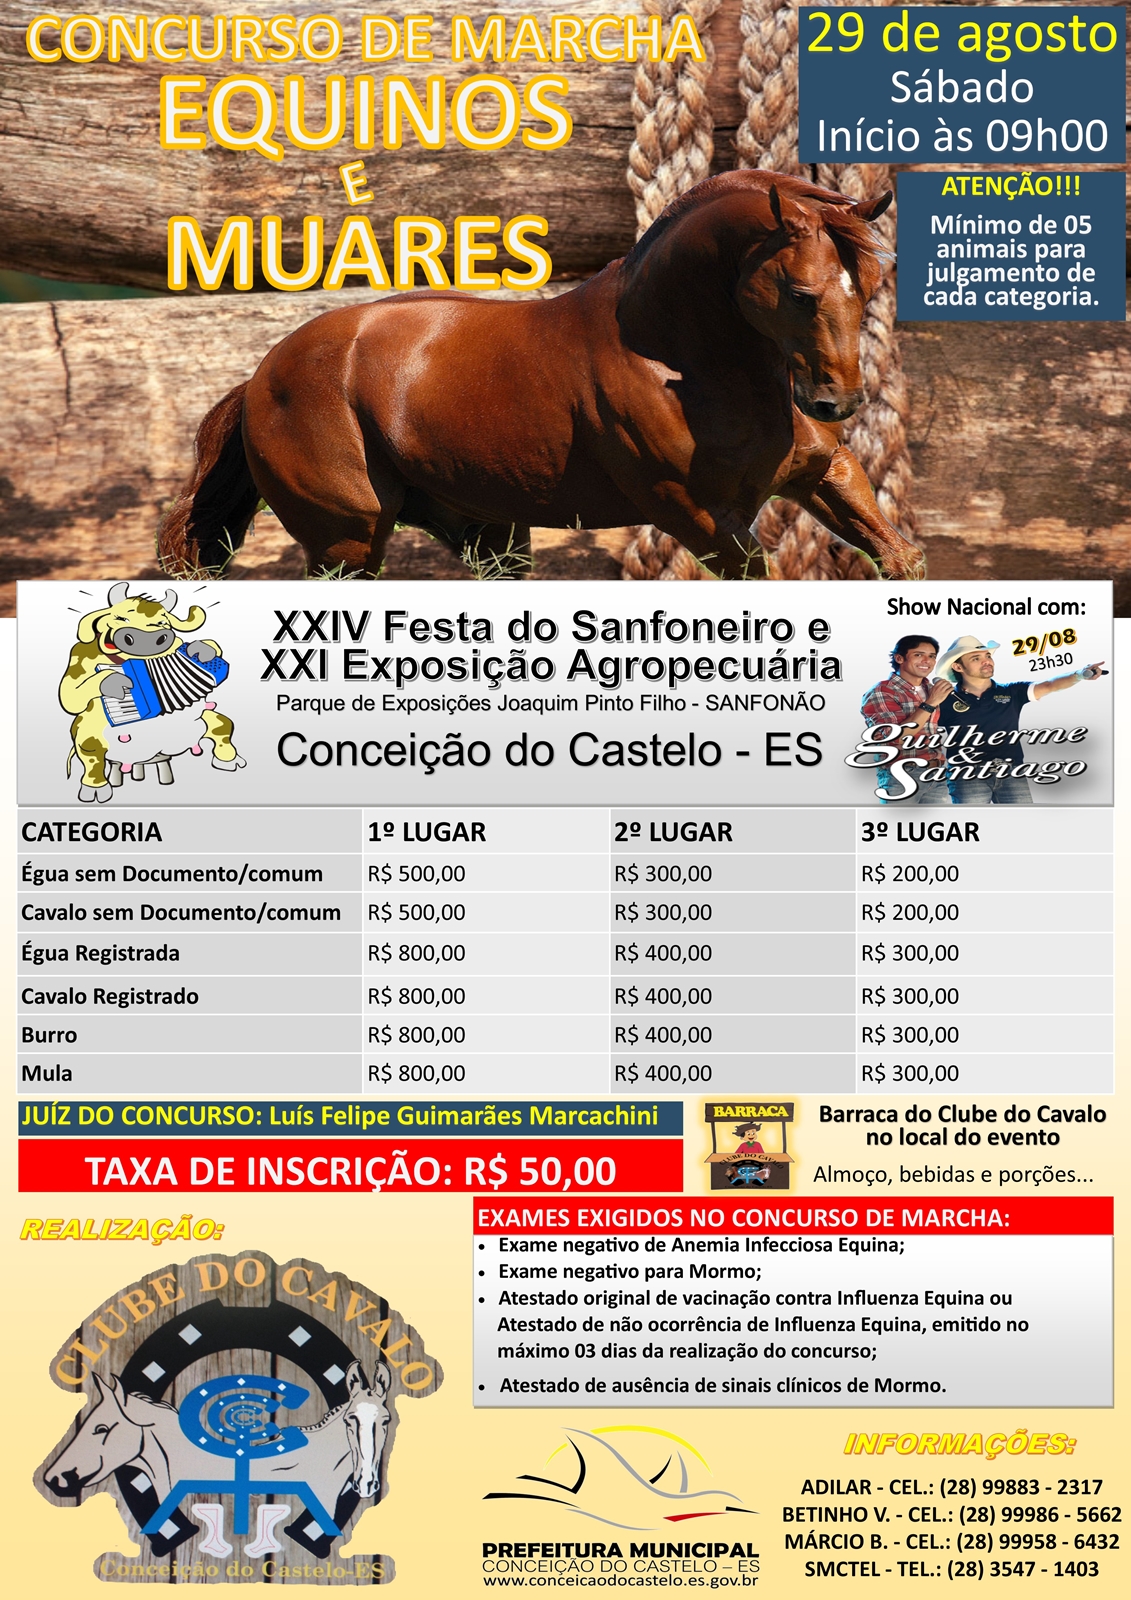 Concurso de Marcha de Equinos e Muares acontece no dia 29 de agosto da XXIV Festa do Sanfoneiro